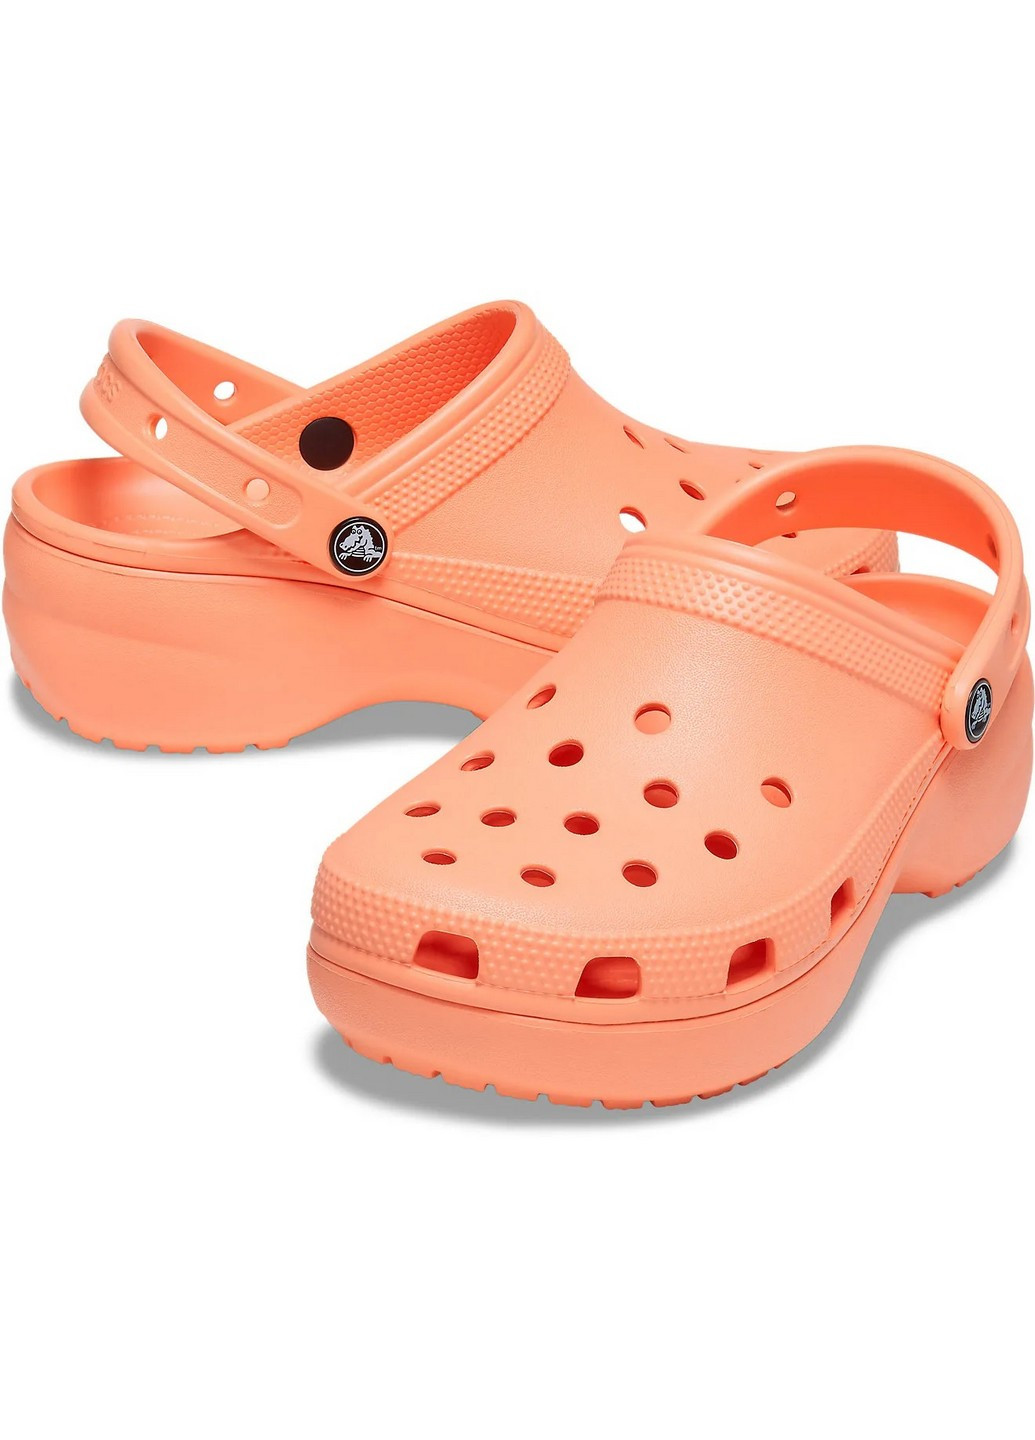 Персиковые сабо кроксы на платформе Crocs